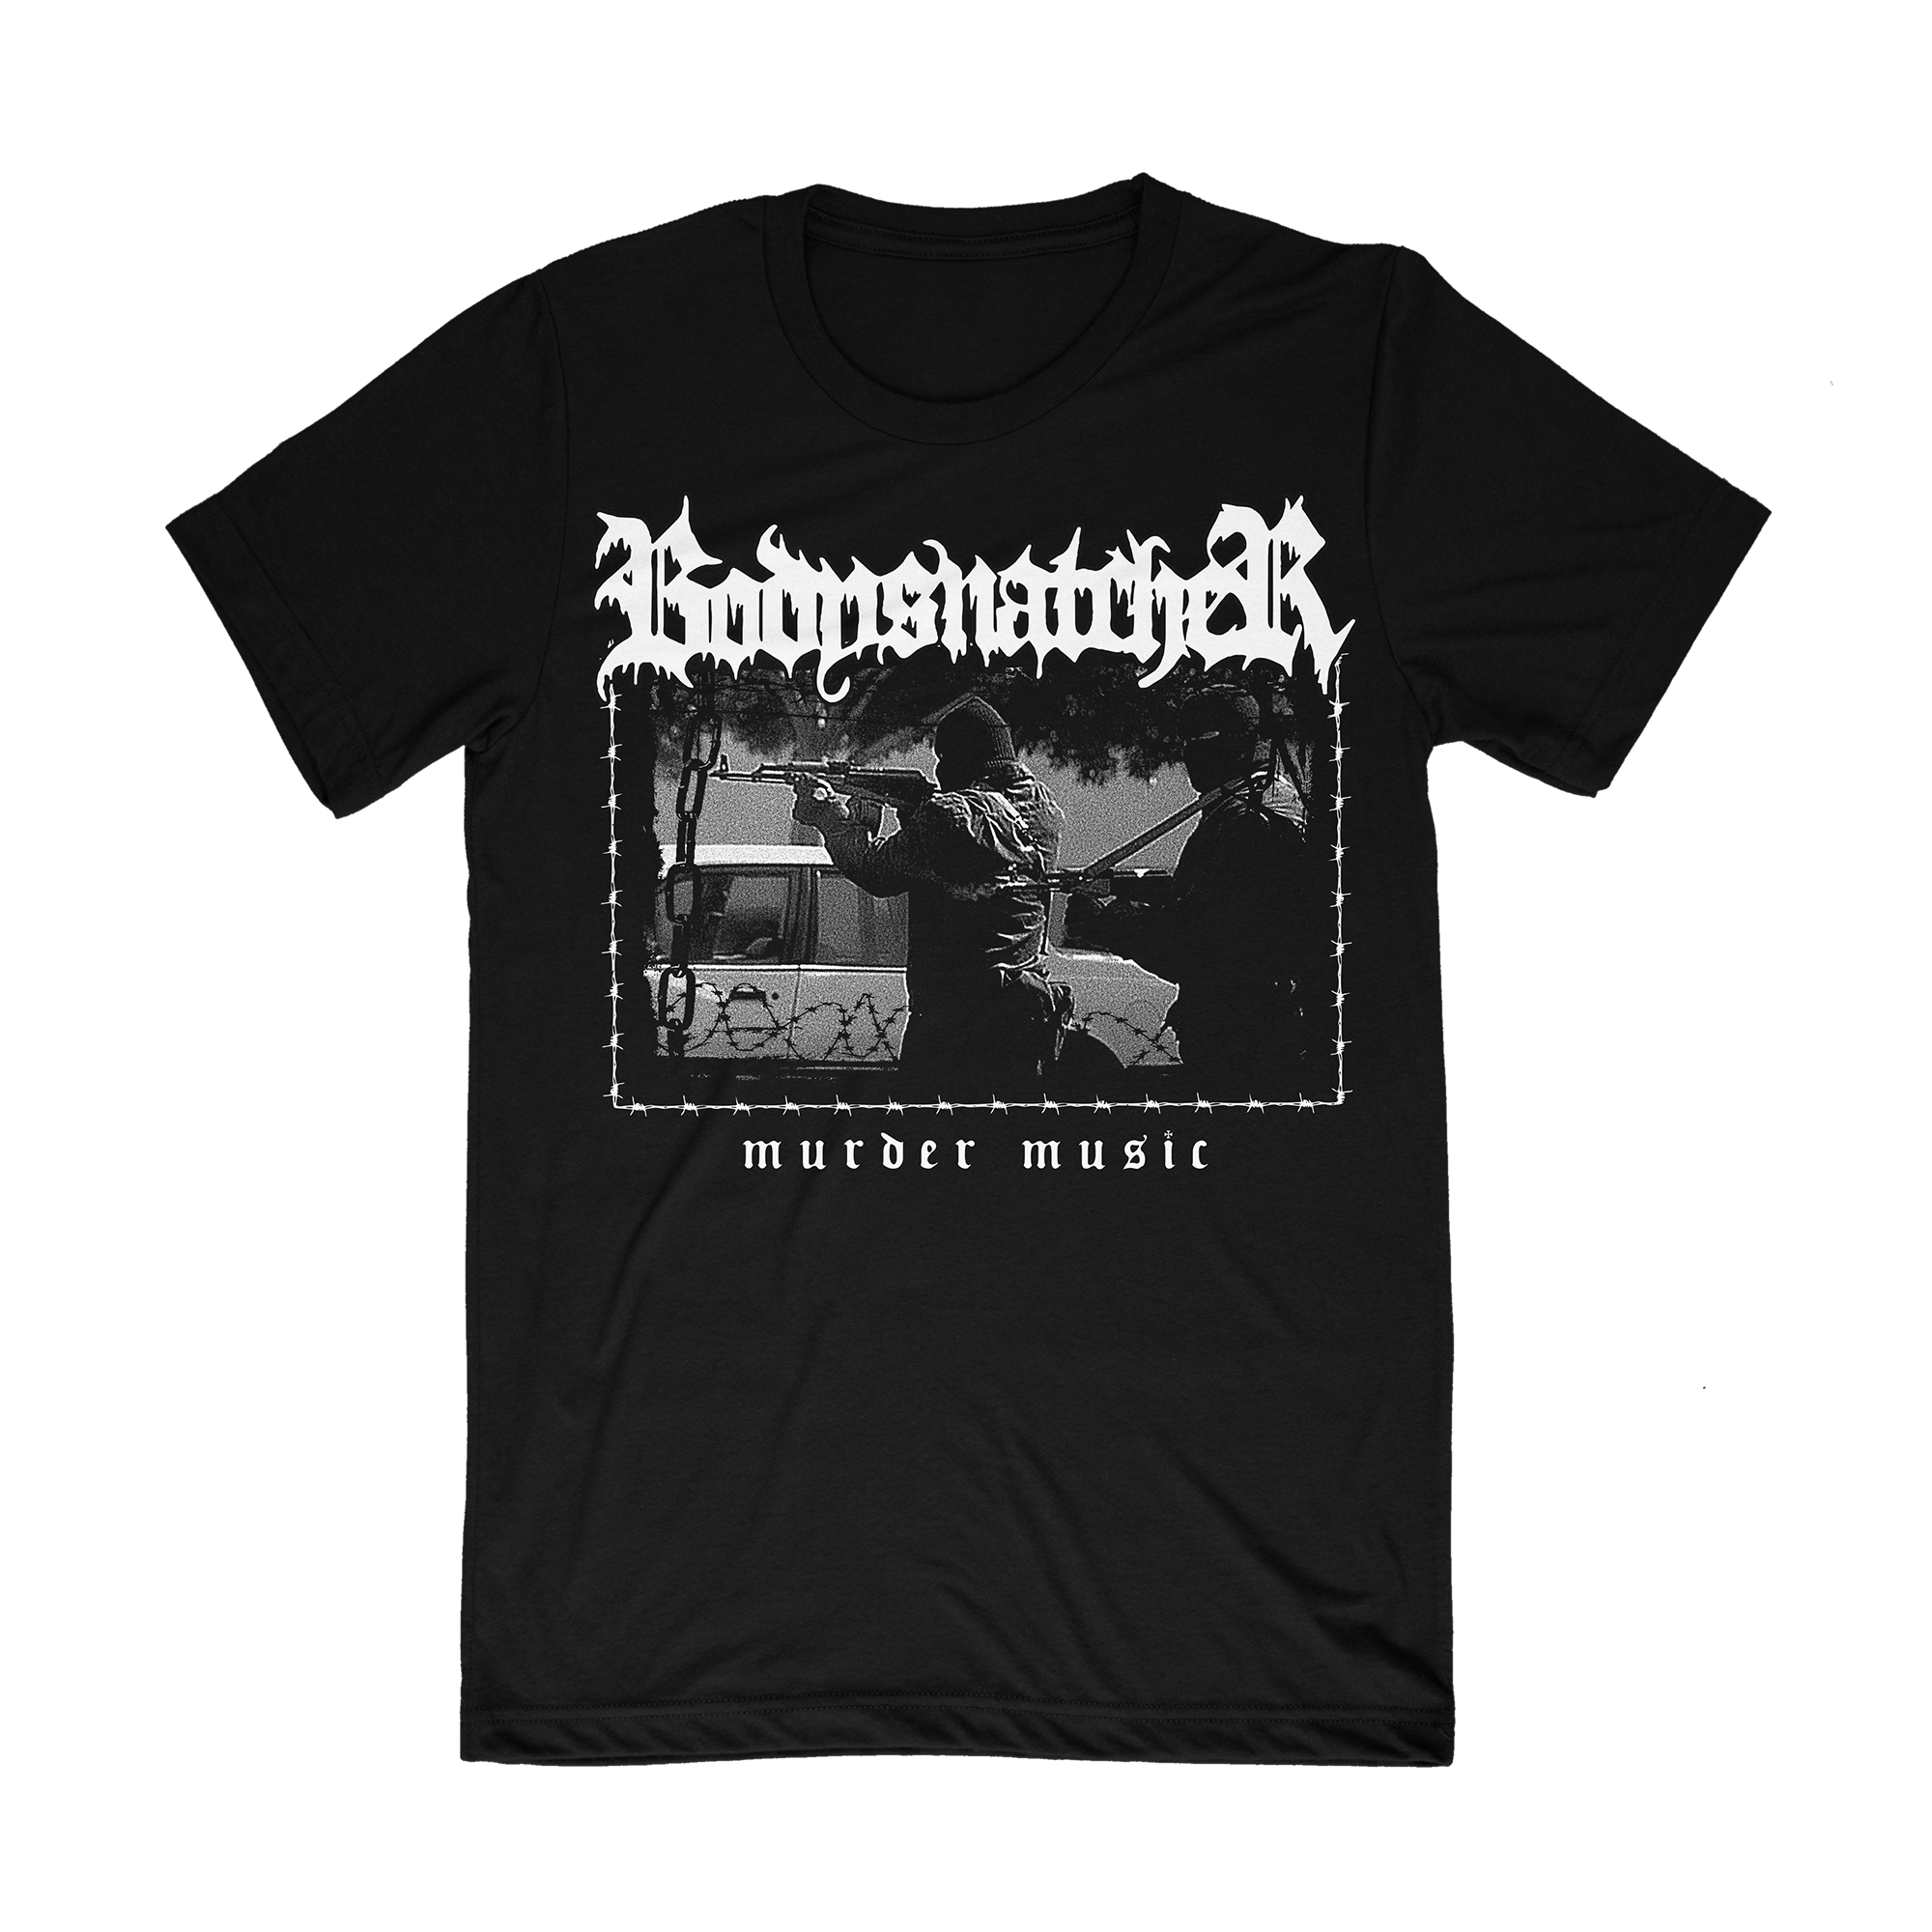 Bodysnatcher "Murder Music" Shirt